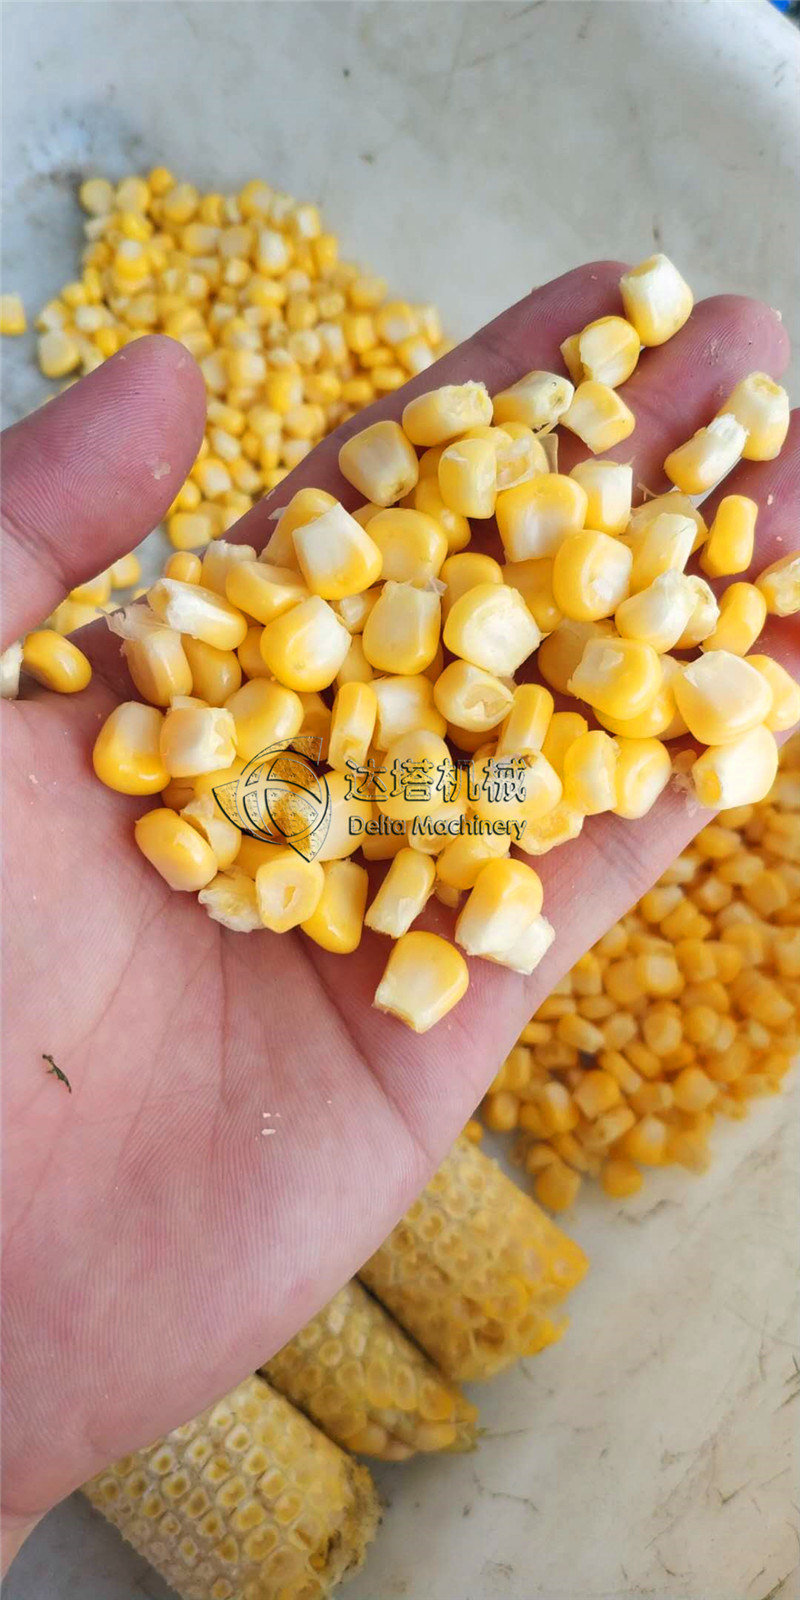 Corn Threshing Machine Maize Corn Kernel Removing Machine Sweet Corn Sheller Thresher